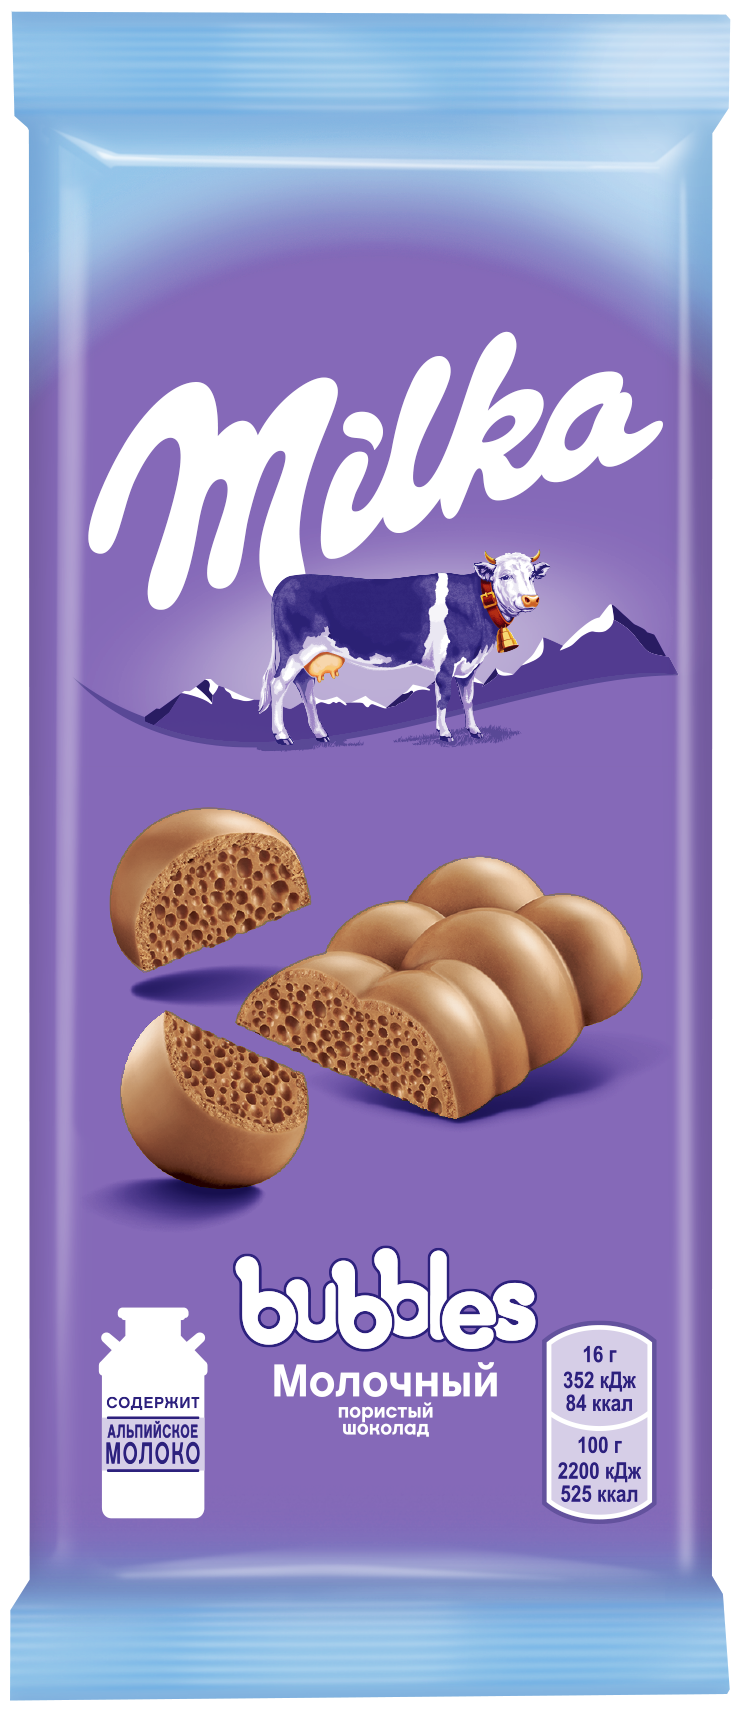 Шоколад Milka Bubbles молочный пористый, 80 г - фотография № 1